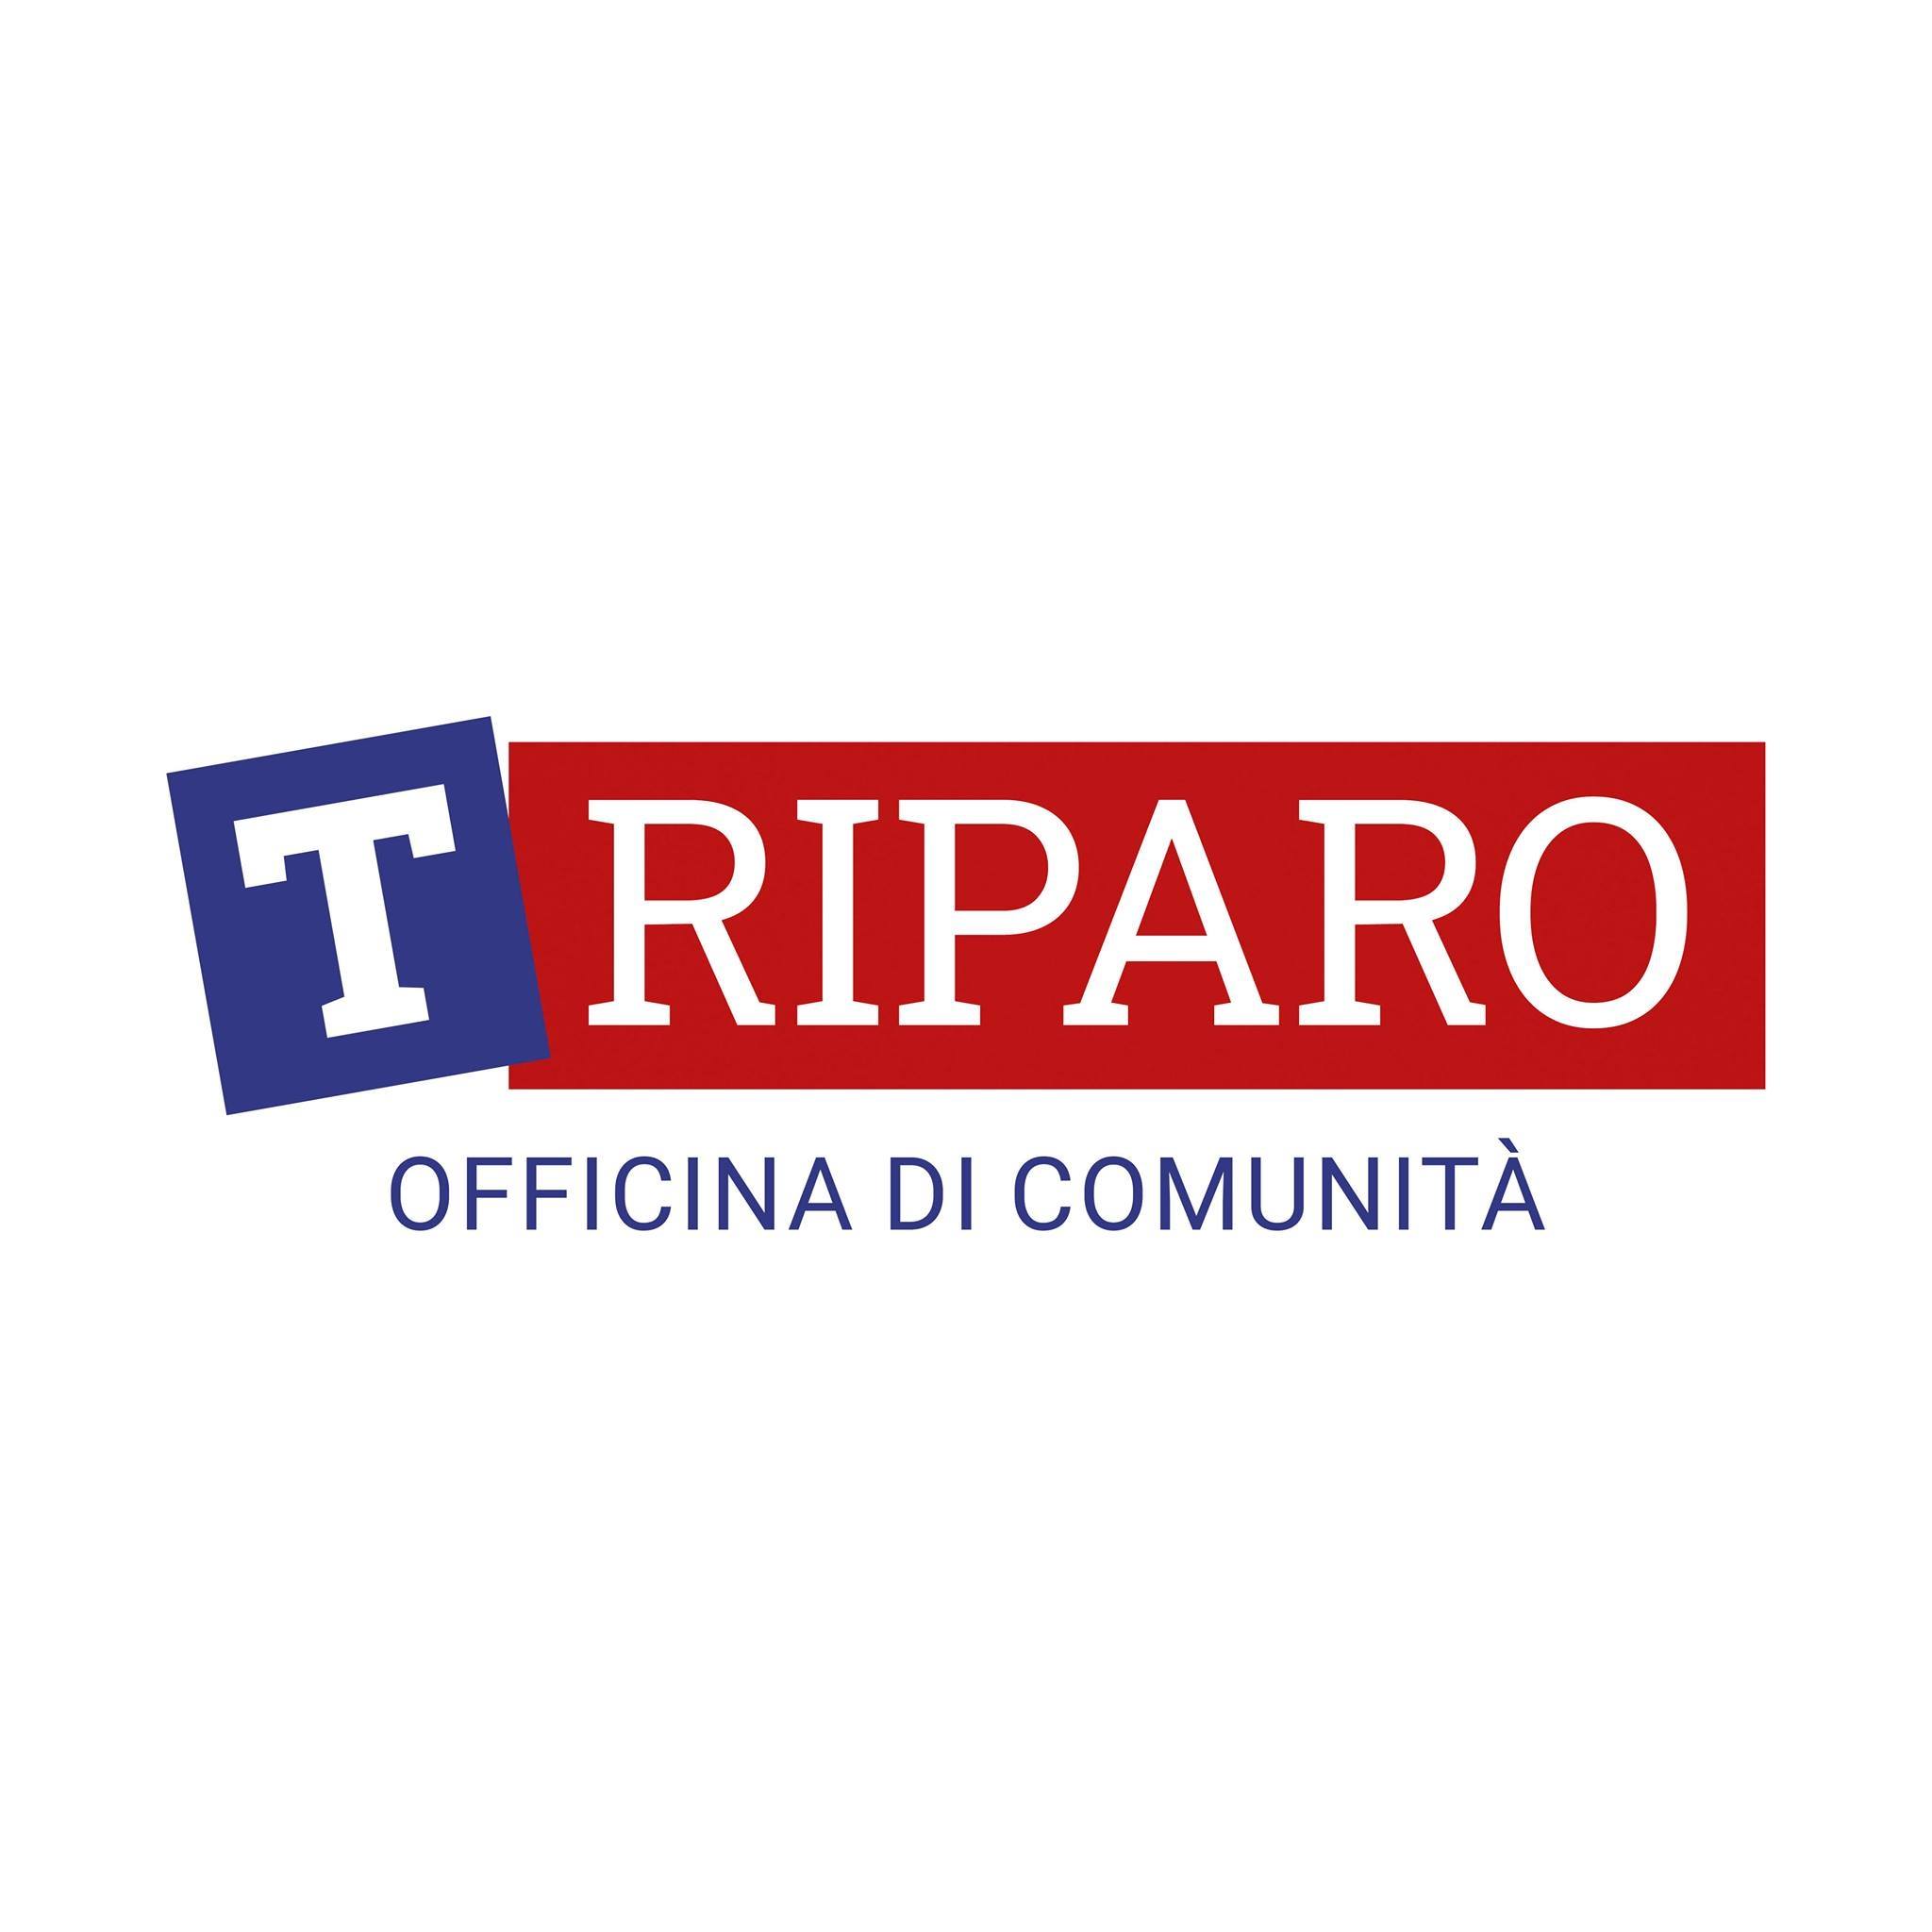 T-Riparo / Officina di comunità